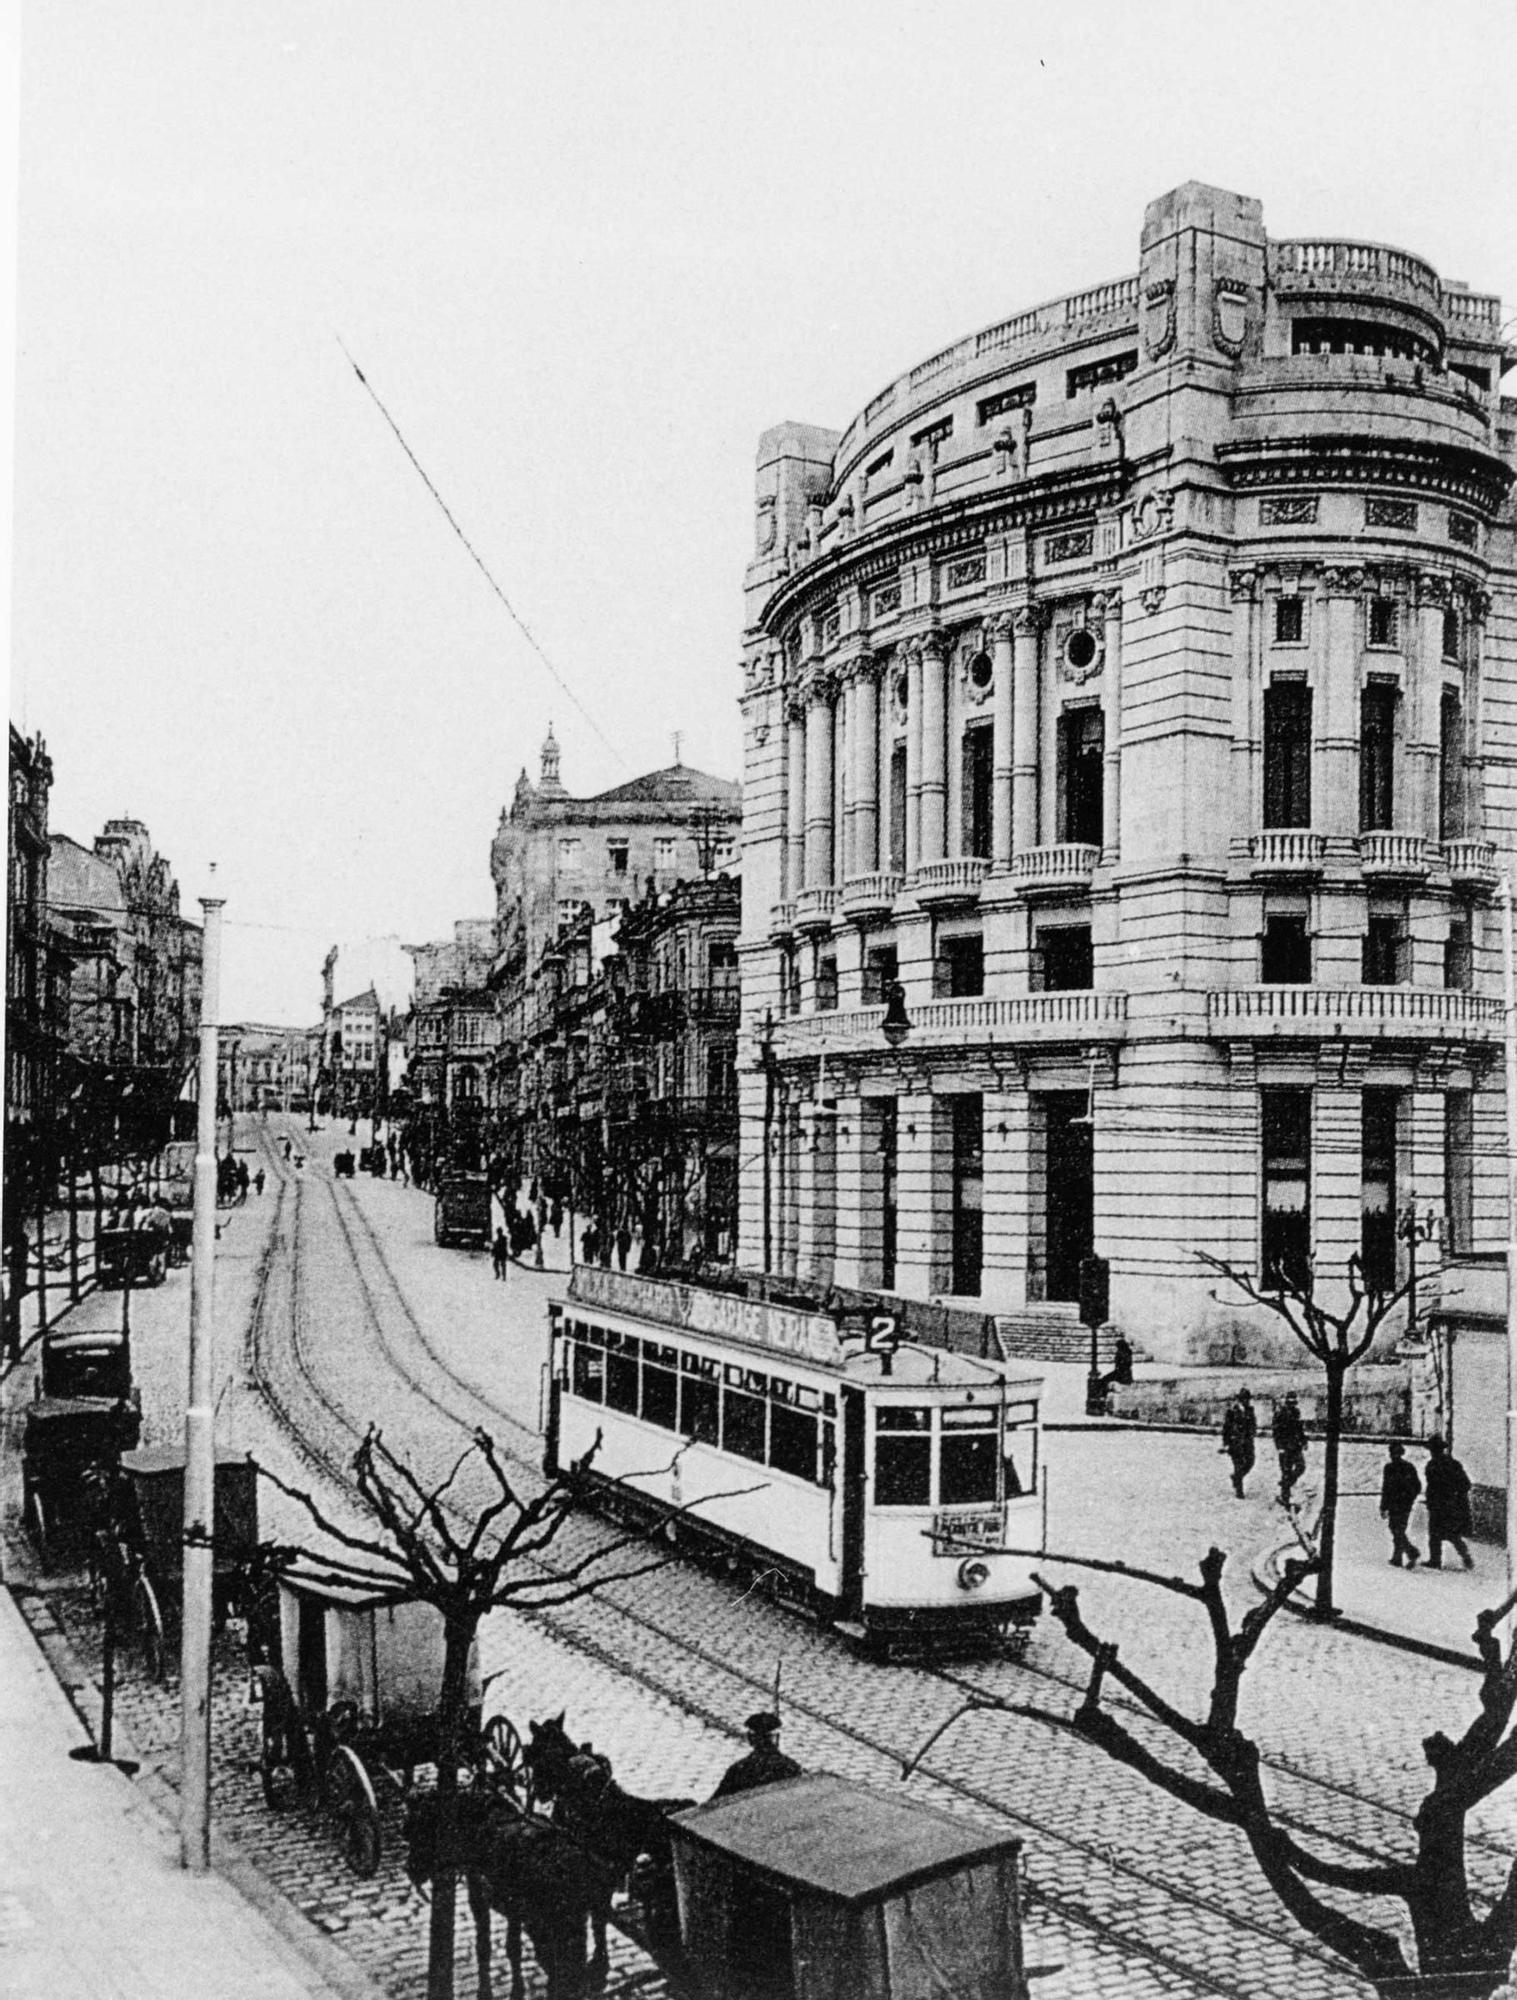 El Vigo que quizá nunca conociste Los tranvías, el primer transporte metropolitano